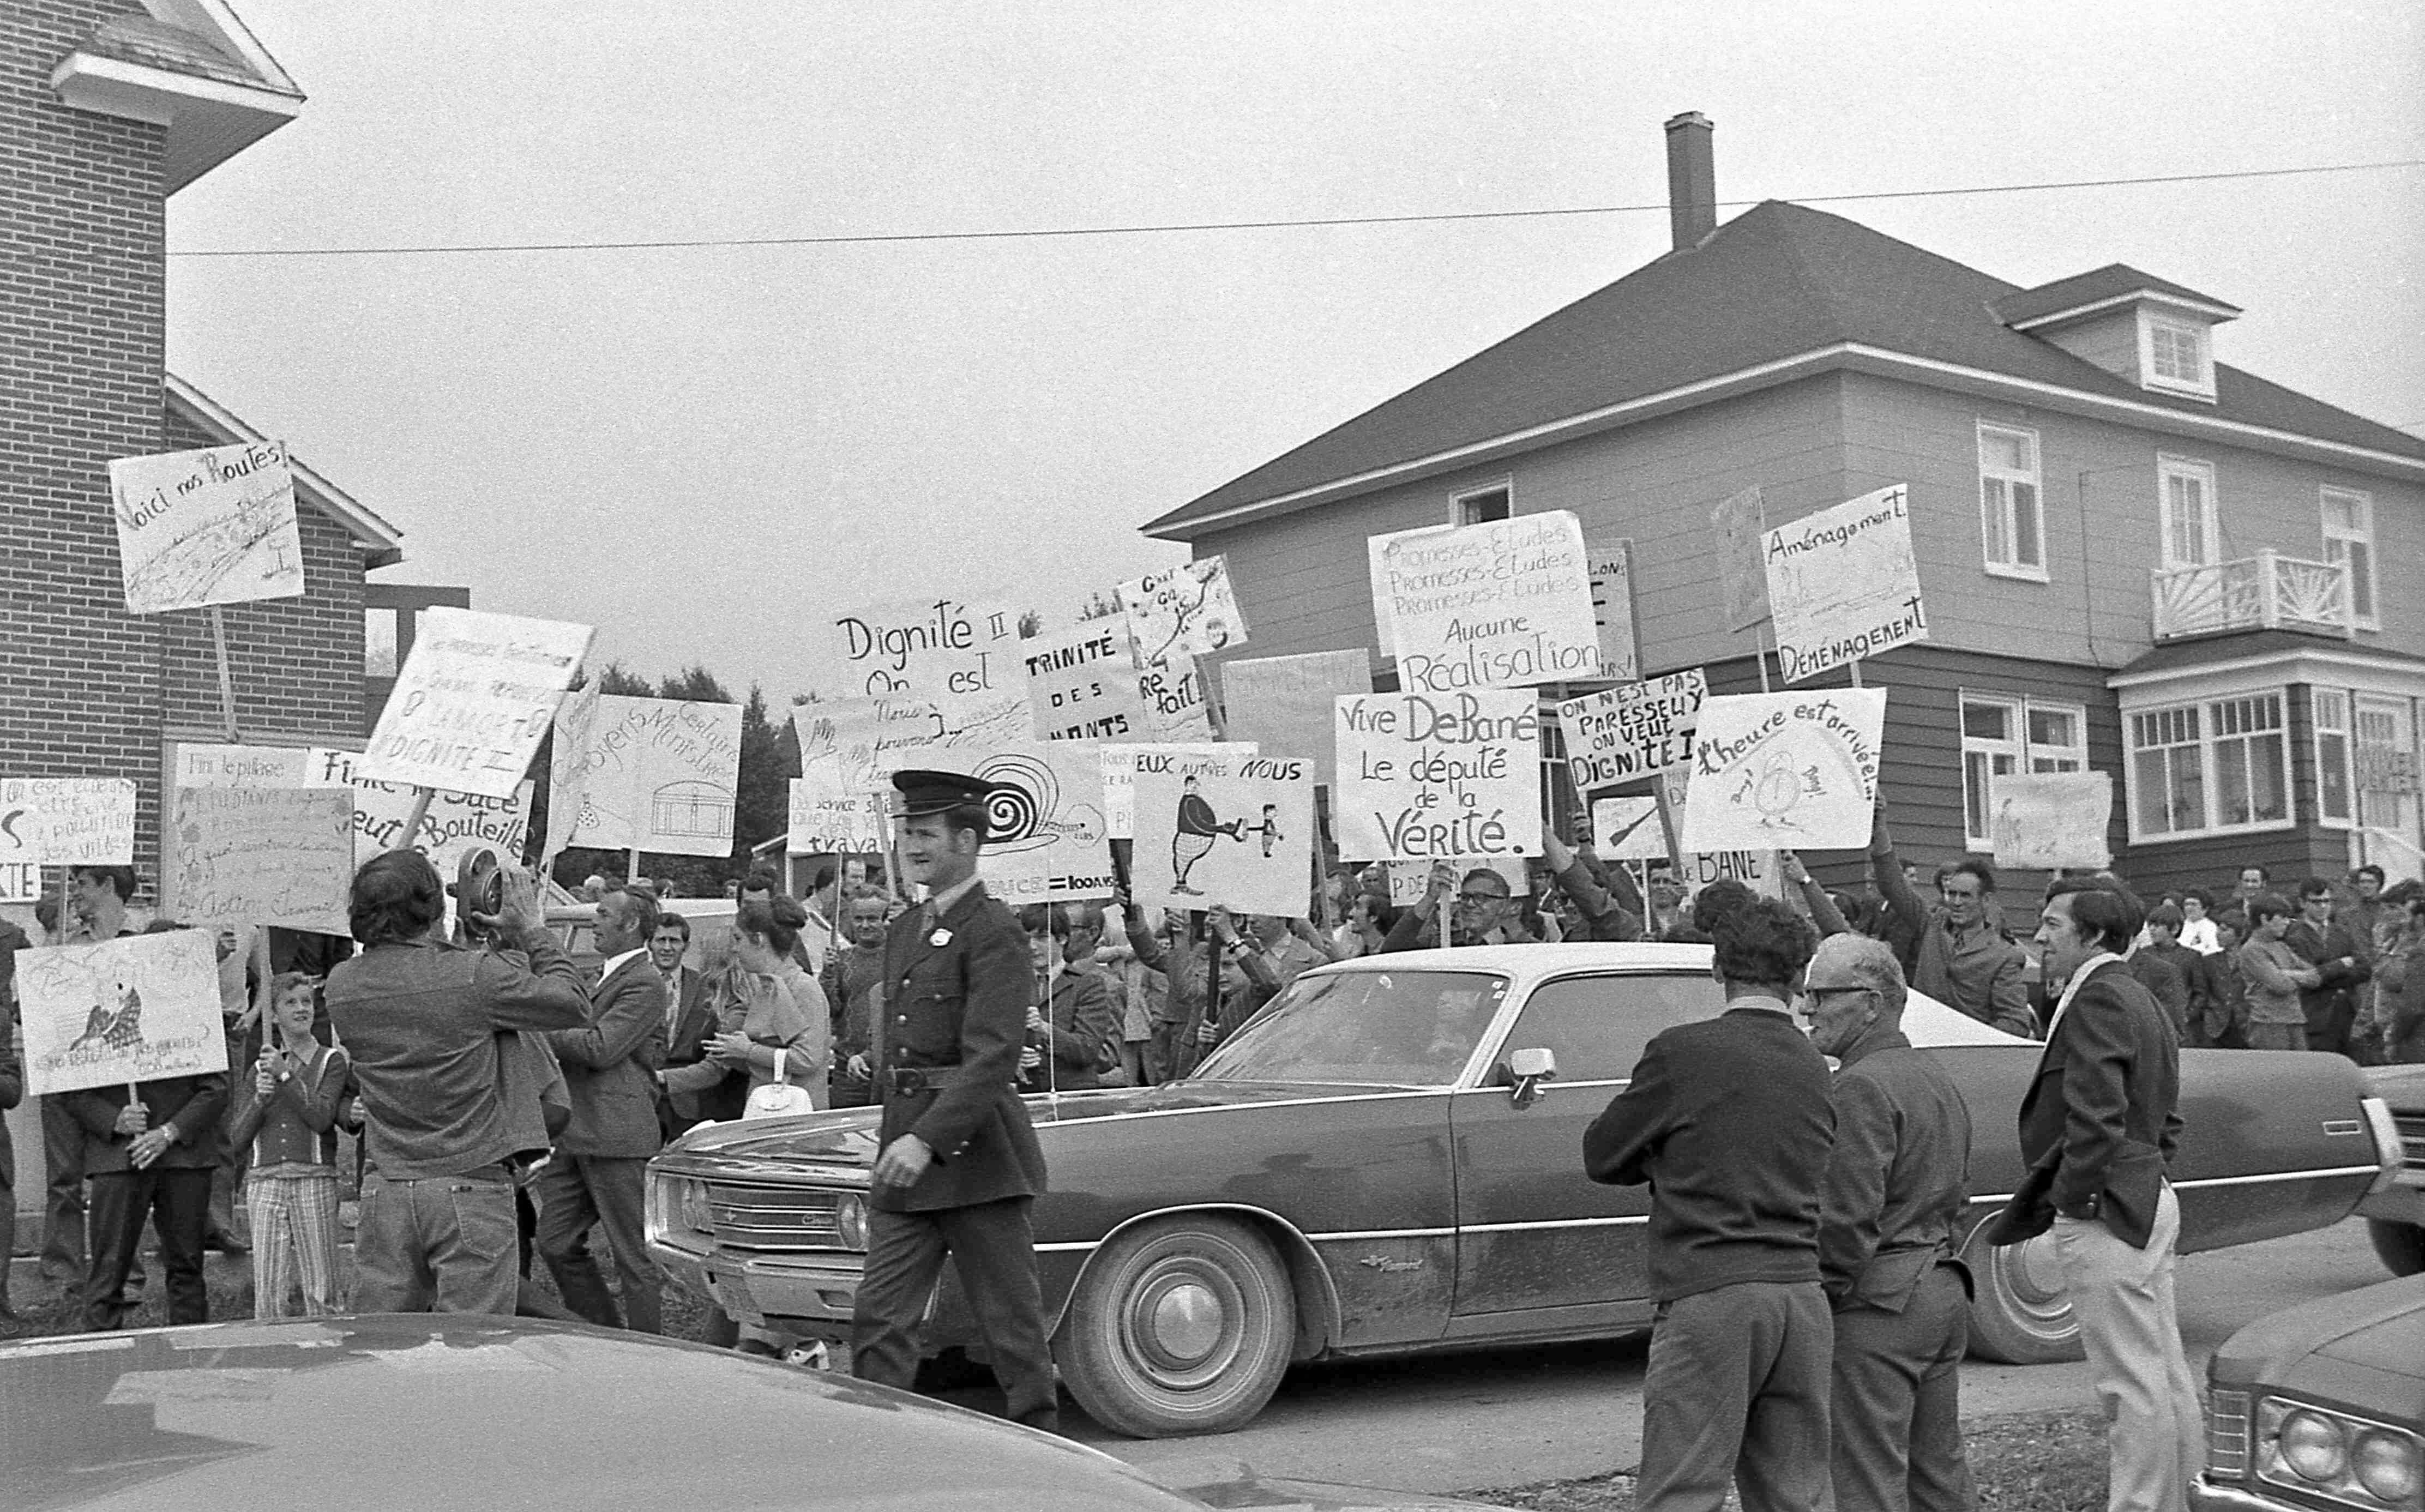 Plus de 6000 personnes manifestent à Esprit-Saint le 15 aout 1971. © Centre des Opérations dignité.